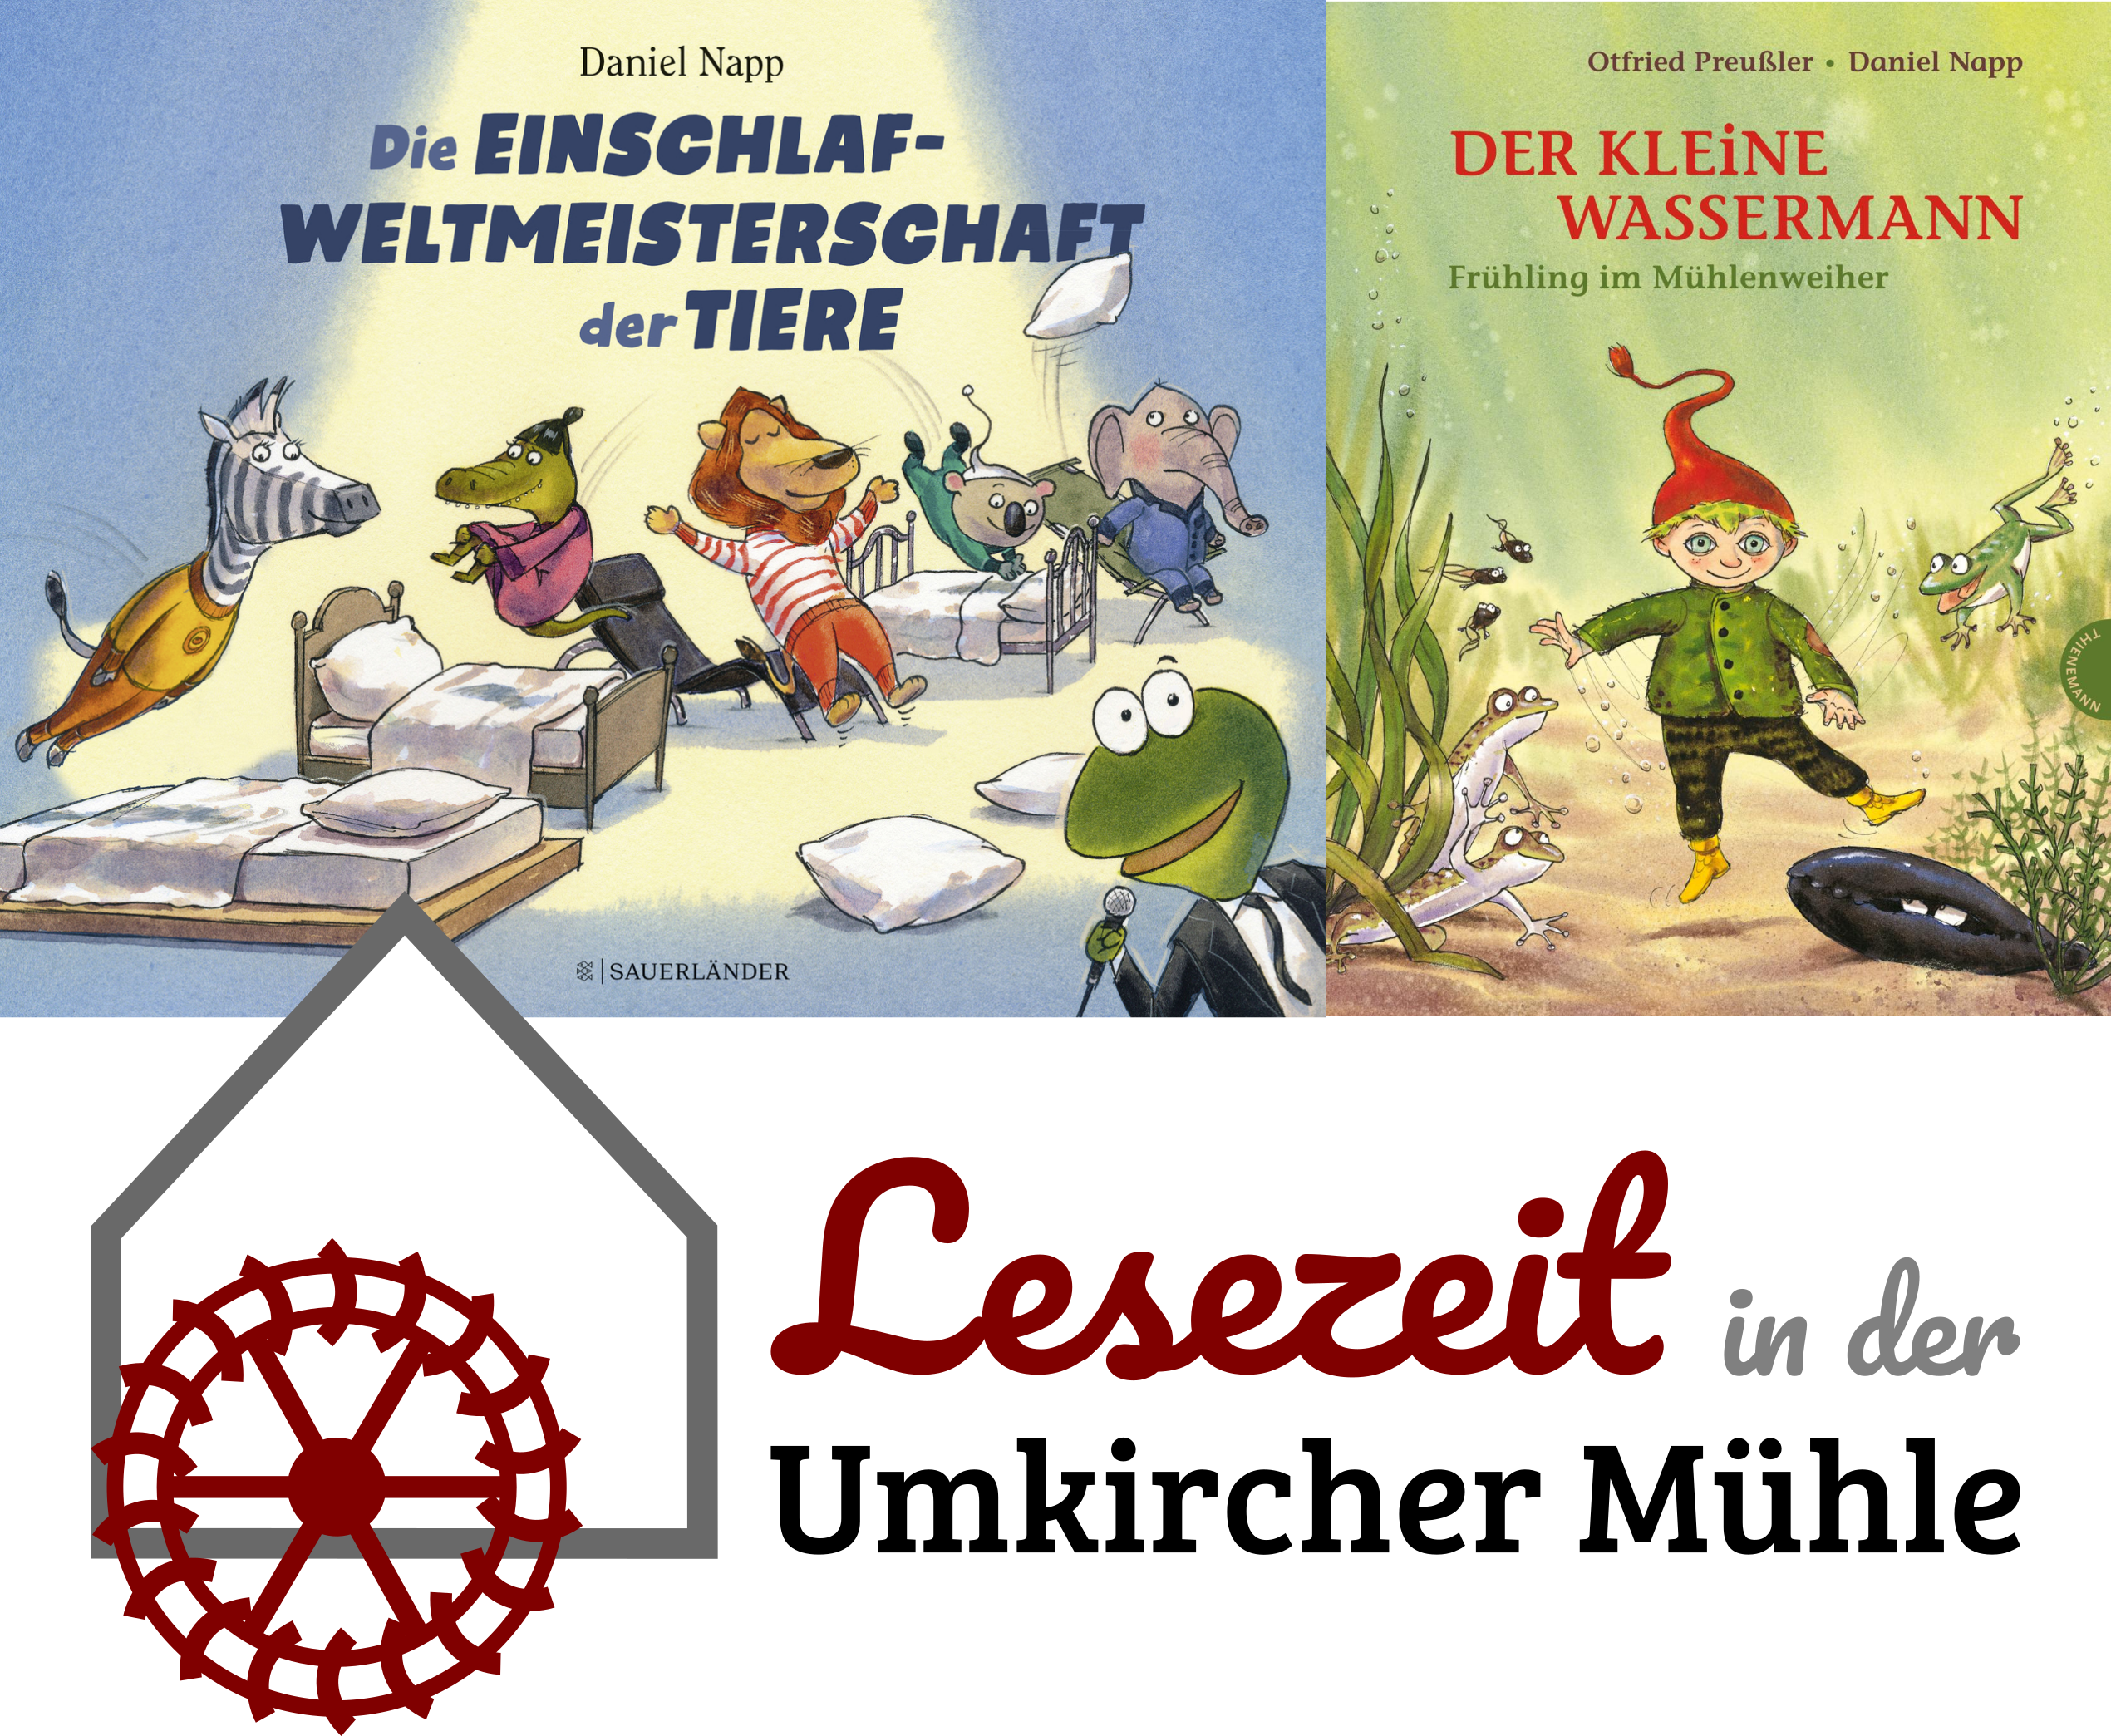 Wir feiern ein Jahr Bilderbuchkino in der Umkircher Mühle